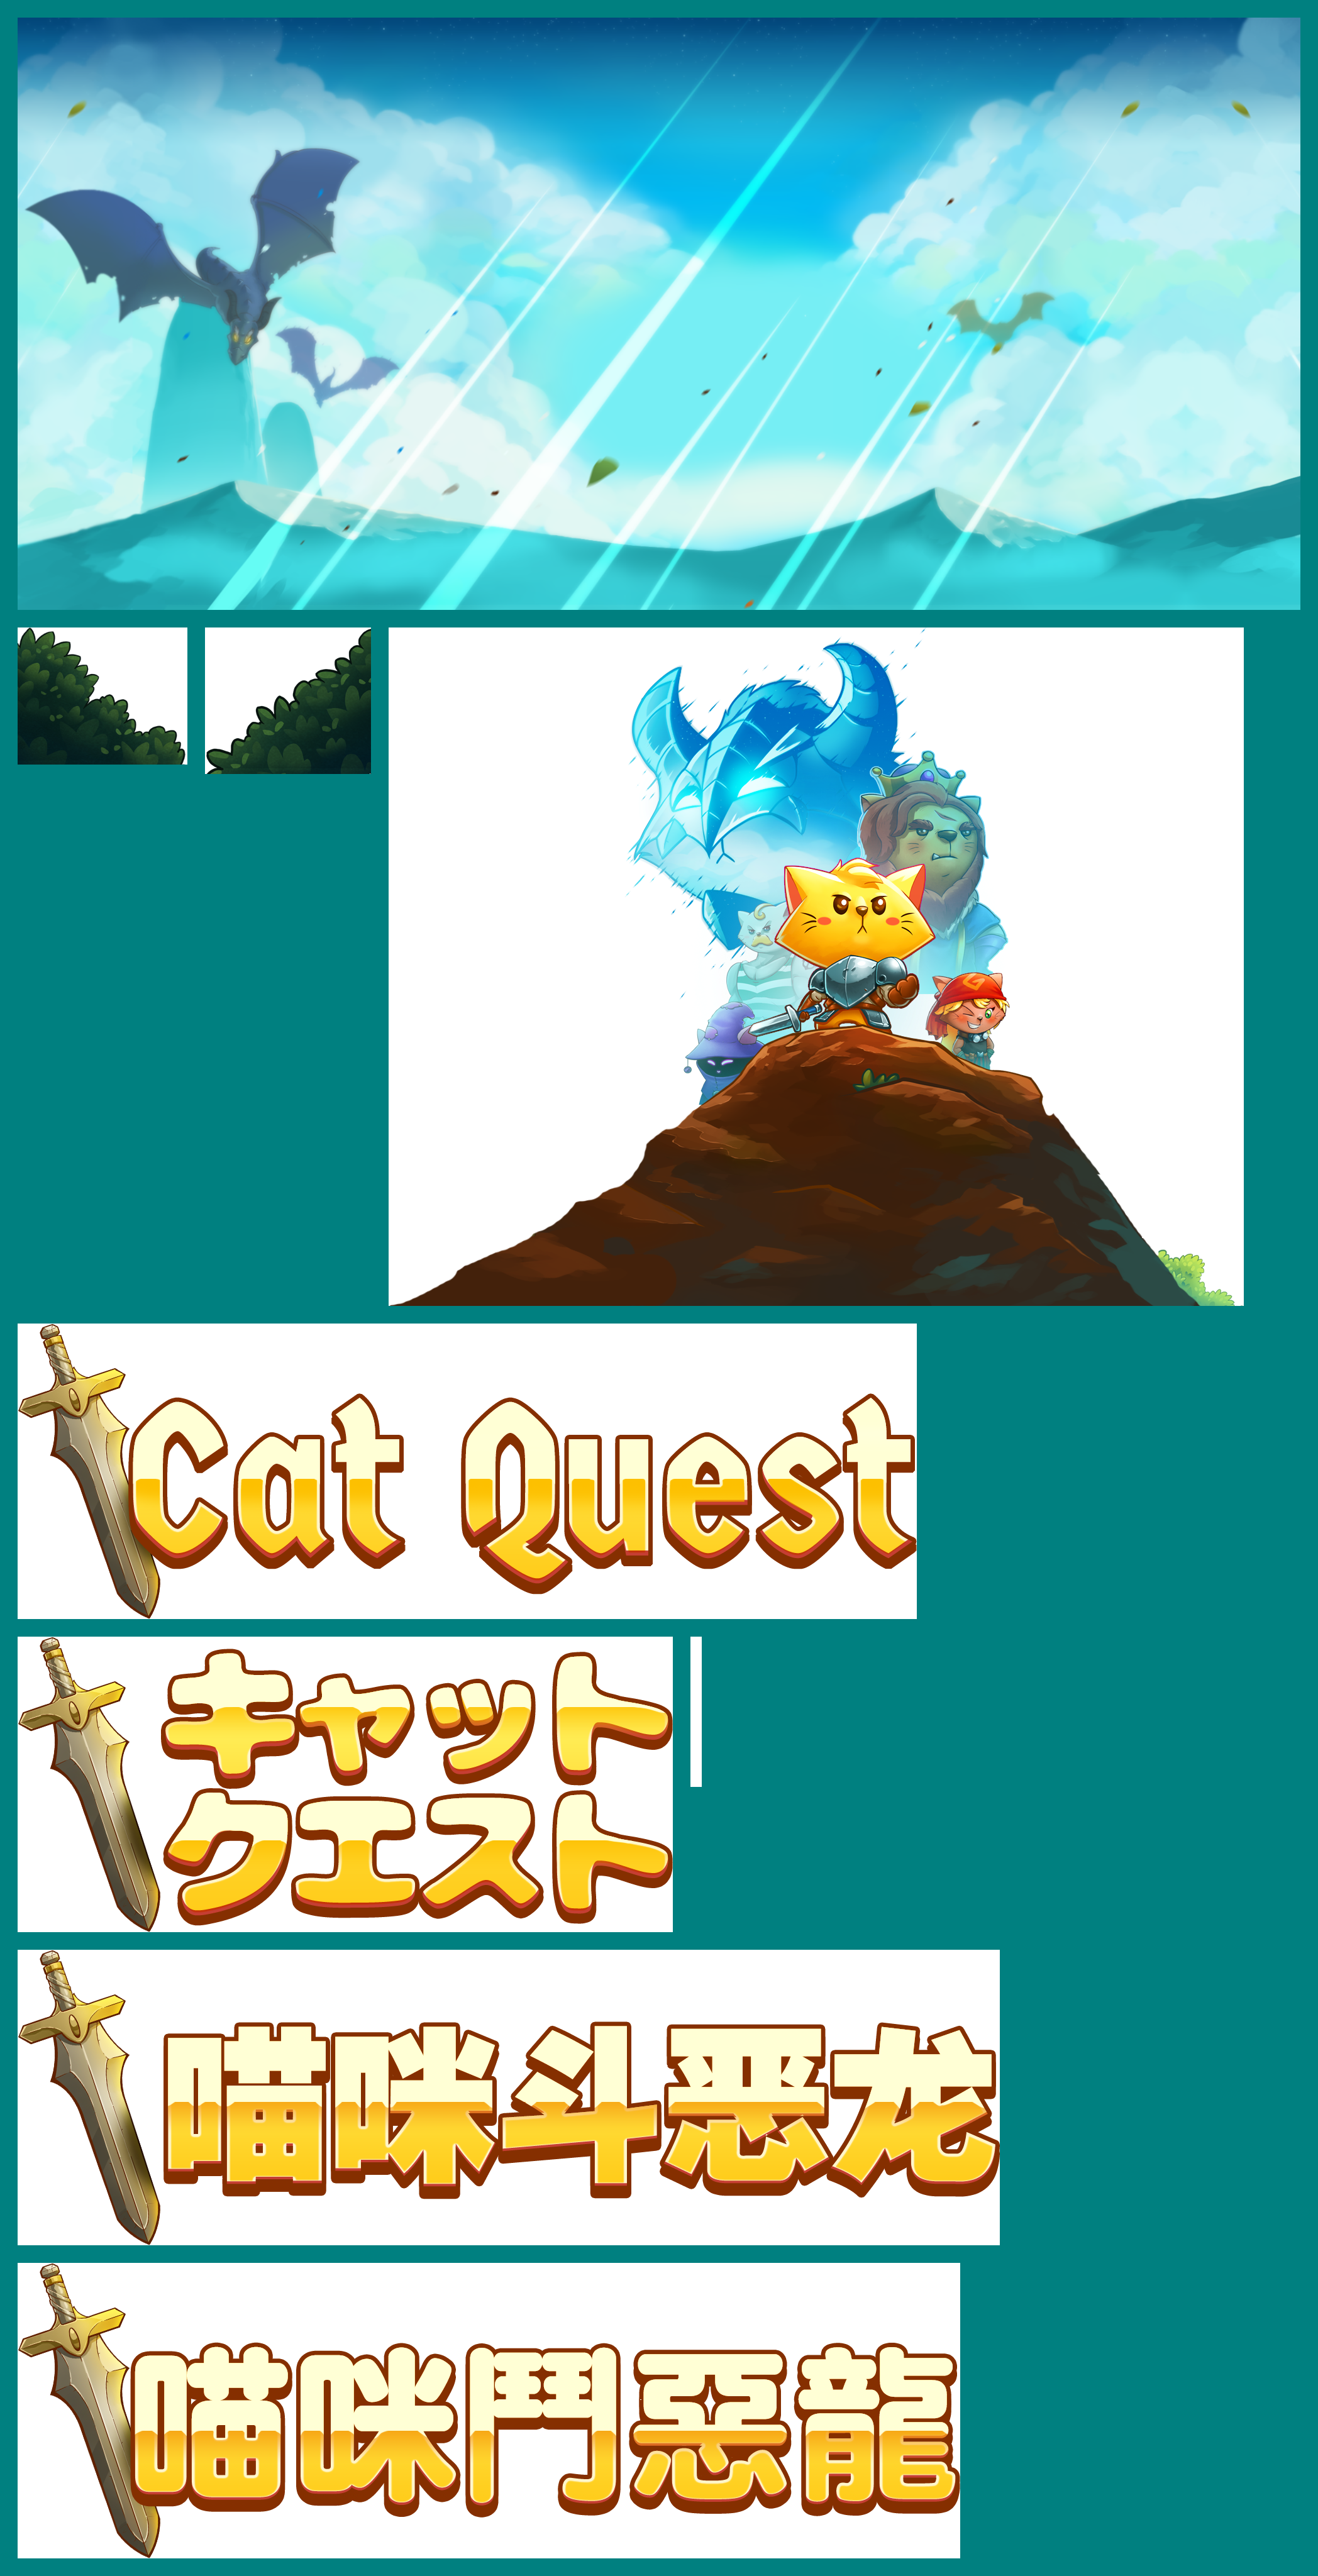 Cat Quest - Title Screen